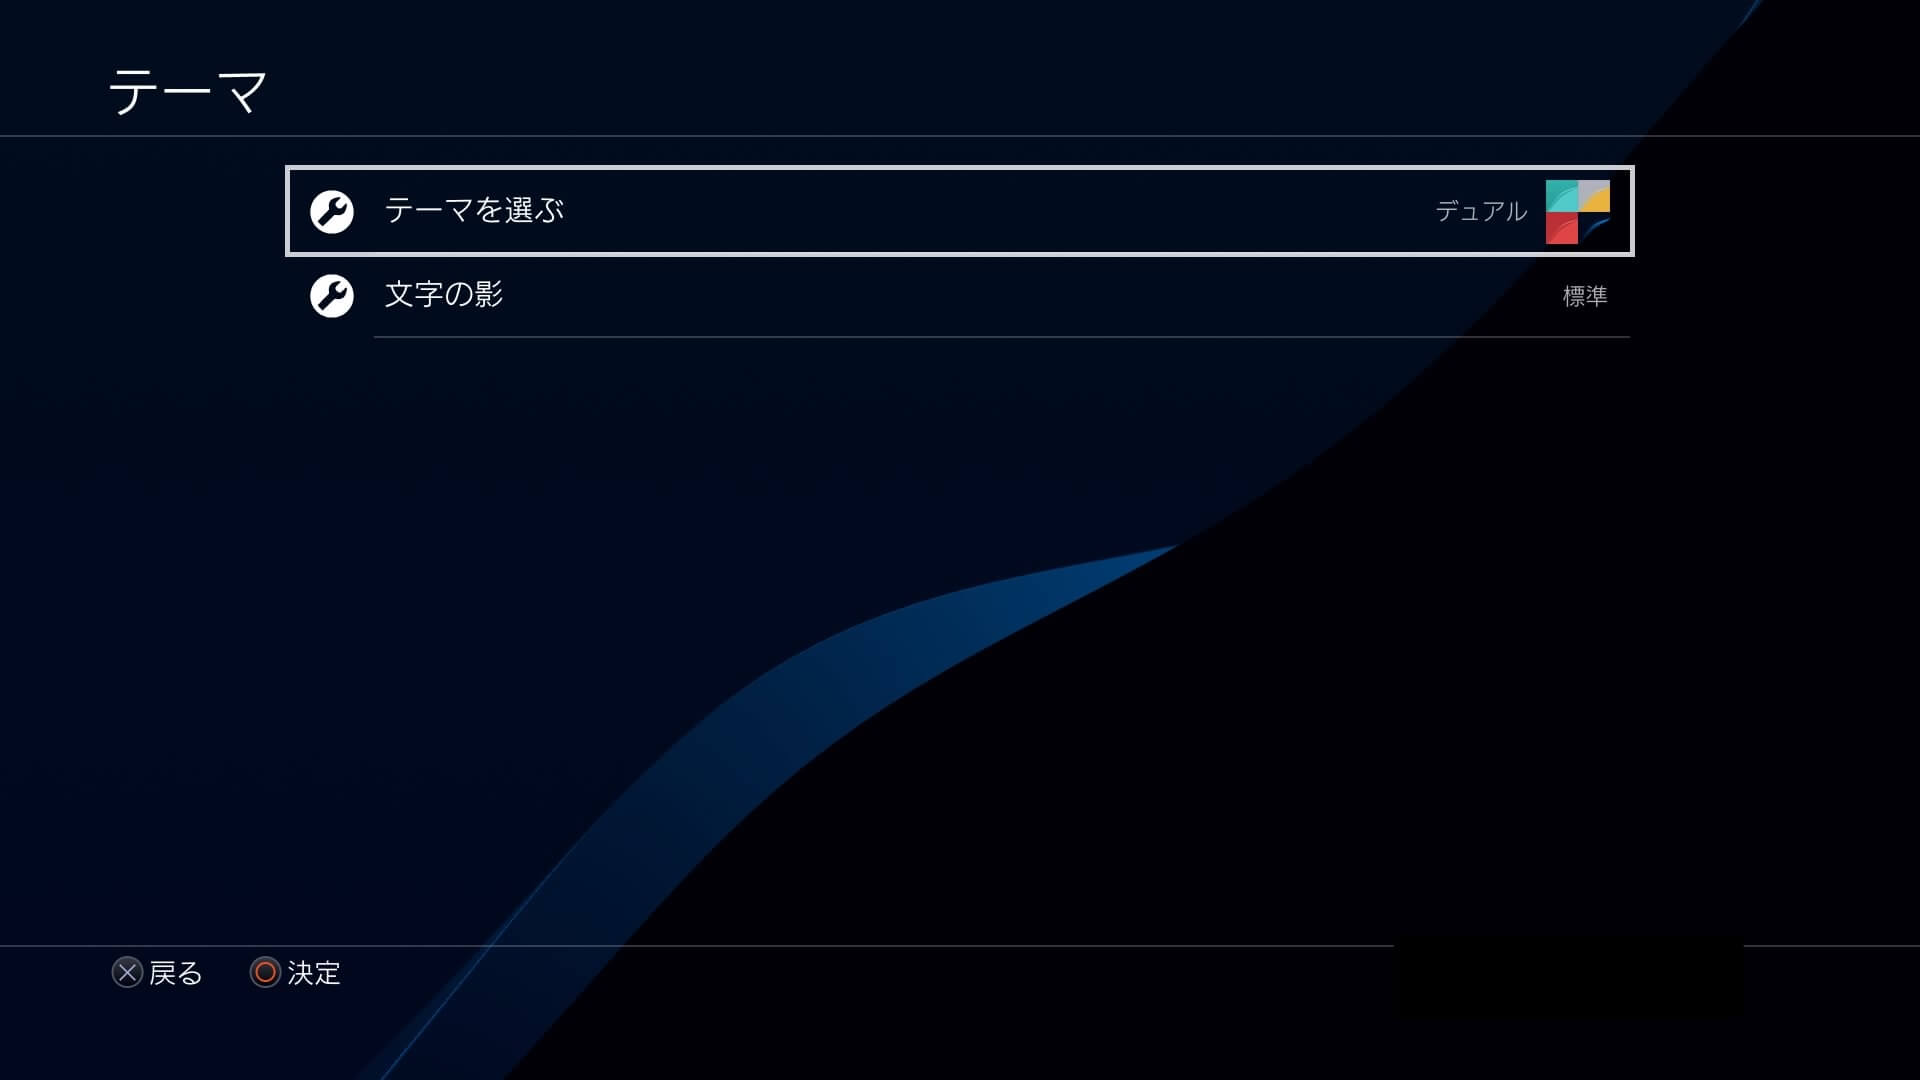 PS4の設定画面